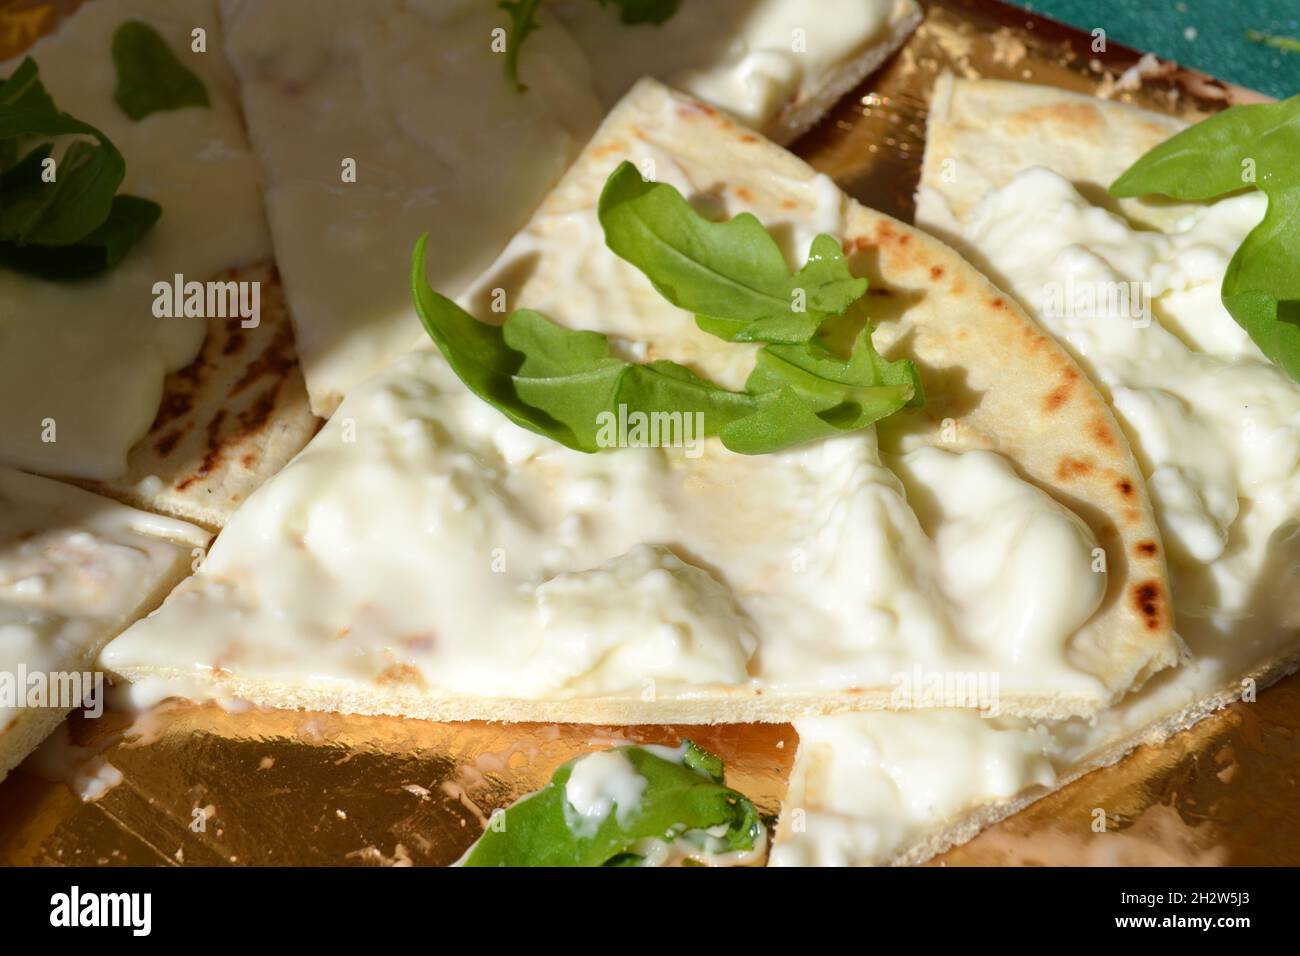 Focaccia-Stück mit weichem Weißkäse übertännt und mit Rocket Salad verziert, der auf dem goldenen Tablett unter der strahlenden Sonne platziert wurde. Italienisches Essen. Nahaufnahme Stockfoto